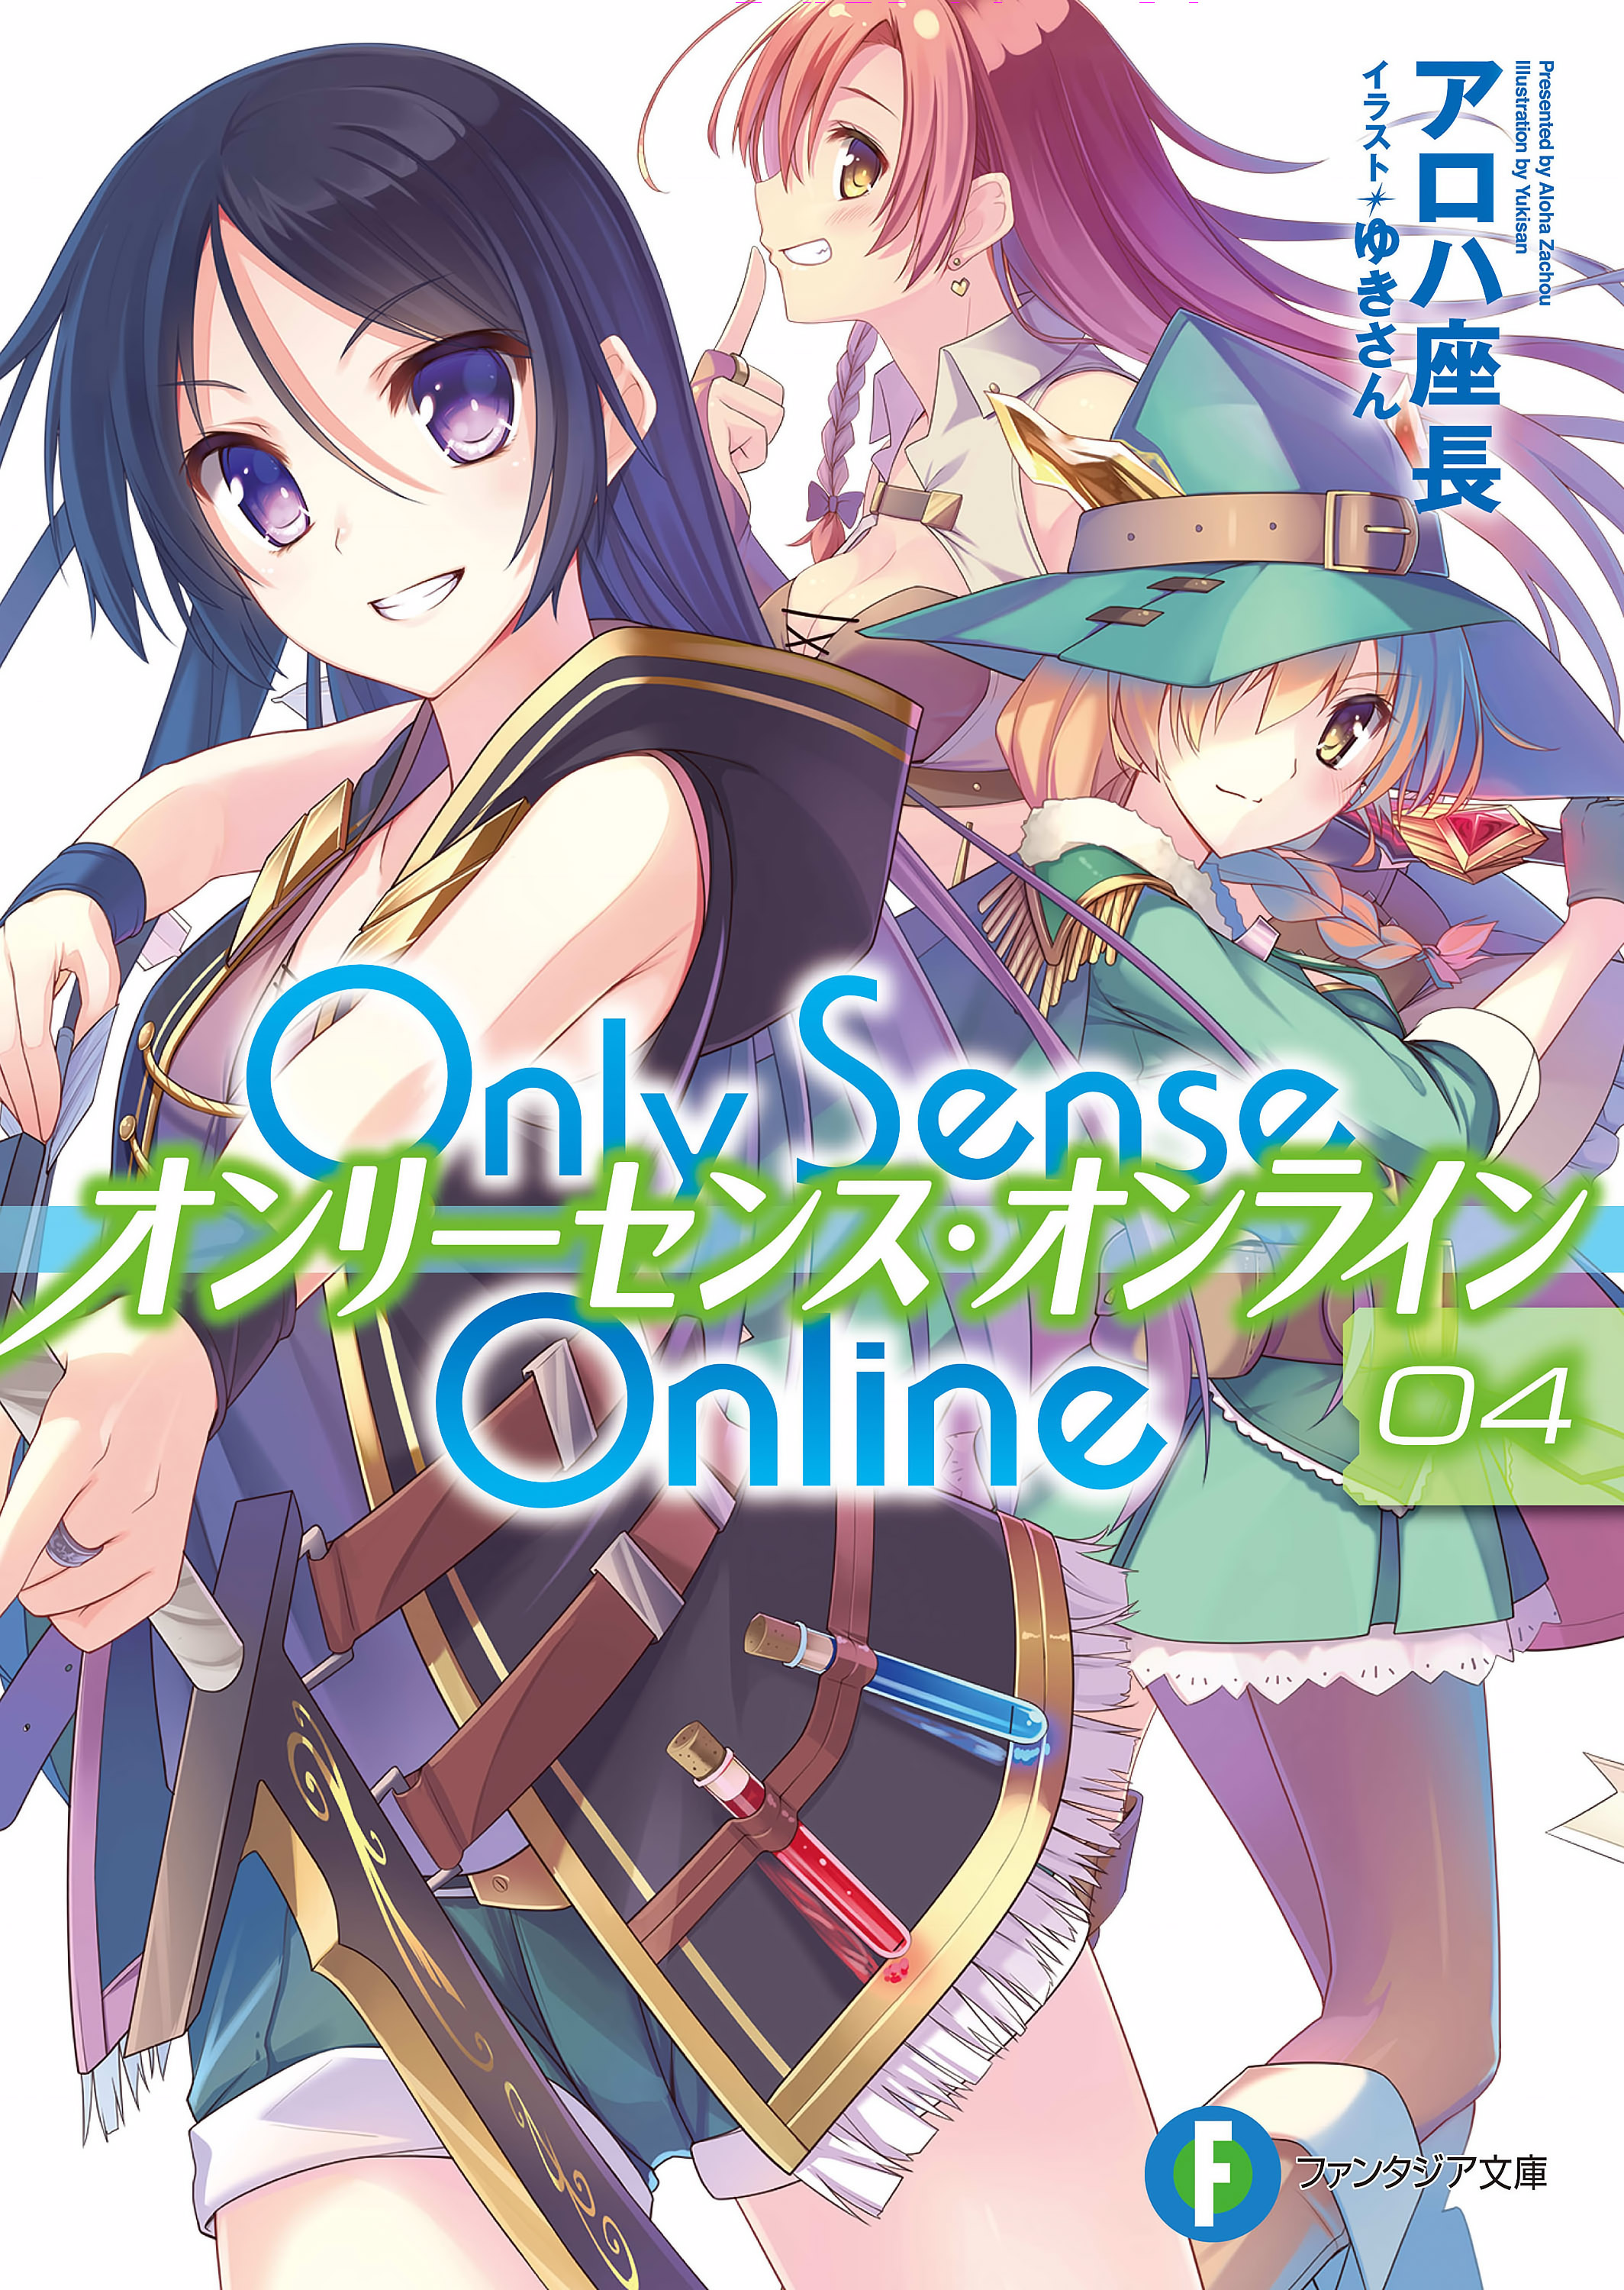 Only Sense Online | Sonako Light Novel Wiki | Fandom